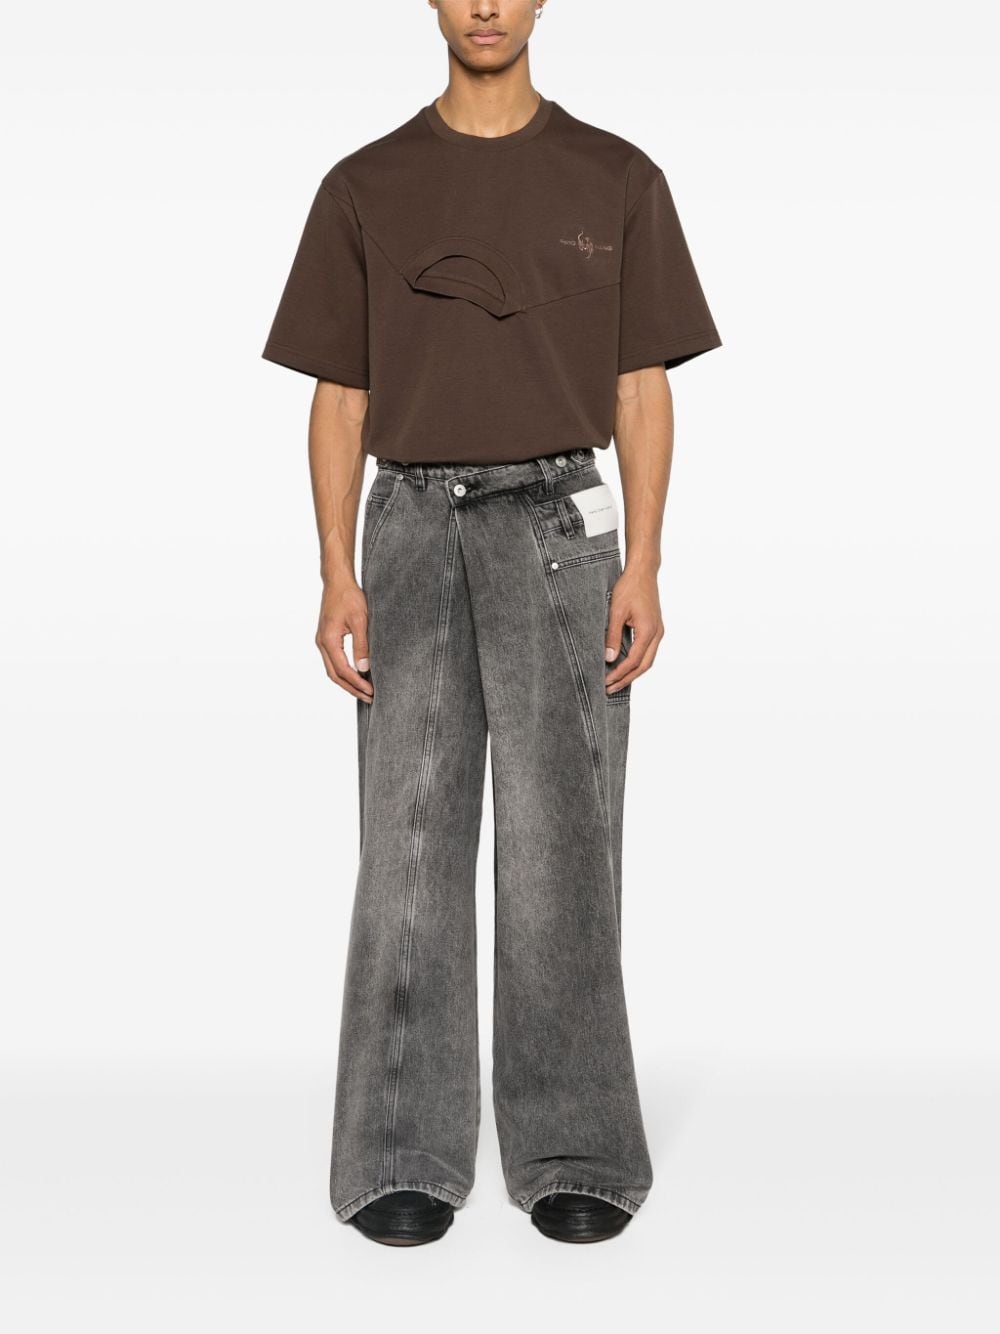 Shop Feng Chen Wang Layered Asymmetric Cotton T-shirt In Brown